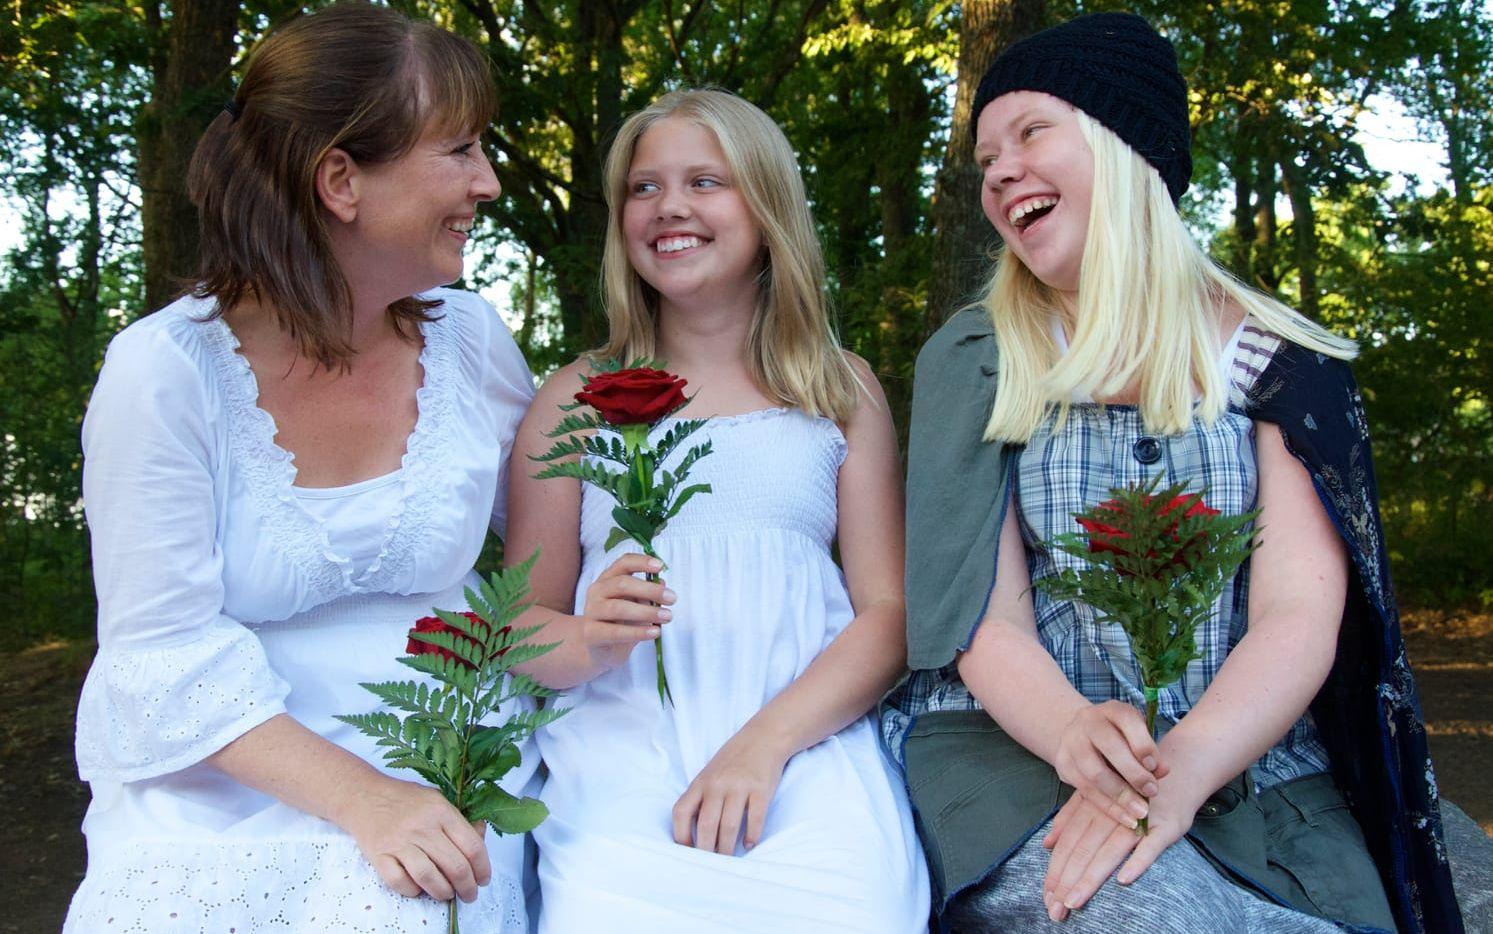 Falkenbergaren Anna-Karin Axelsson har i år sällskap av båda sina döttrar, Ebba (mitten) och Elin, på scen i "Bröderna Lejonhjärta". Bild: Martin Erlandsson